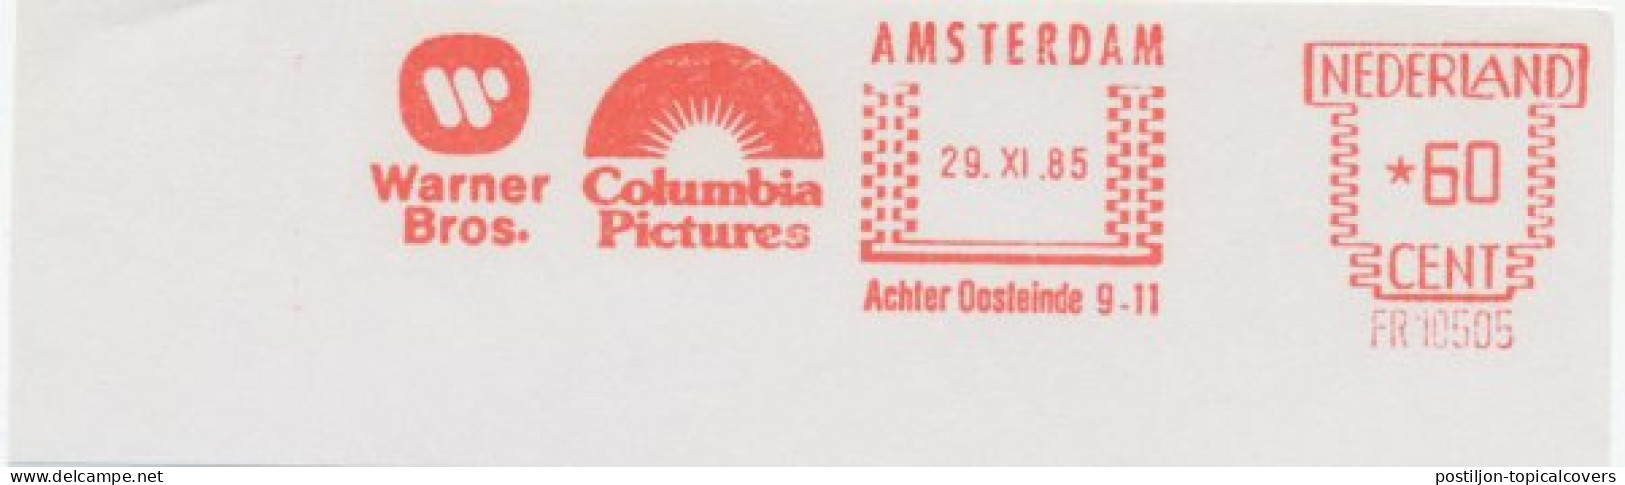 Meter Cut Netherlands 1985 Warner Bros. - Columbia Pictures - Cinéma